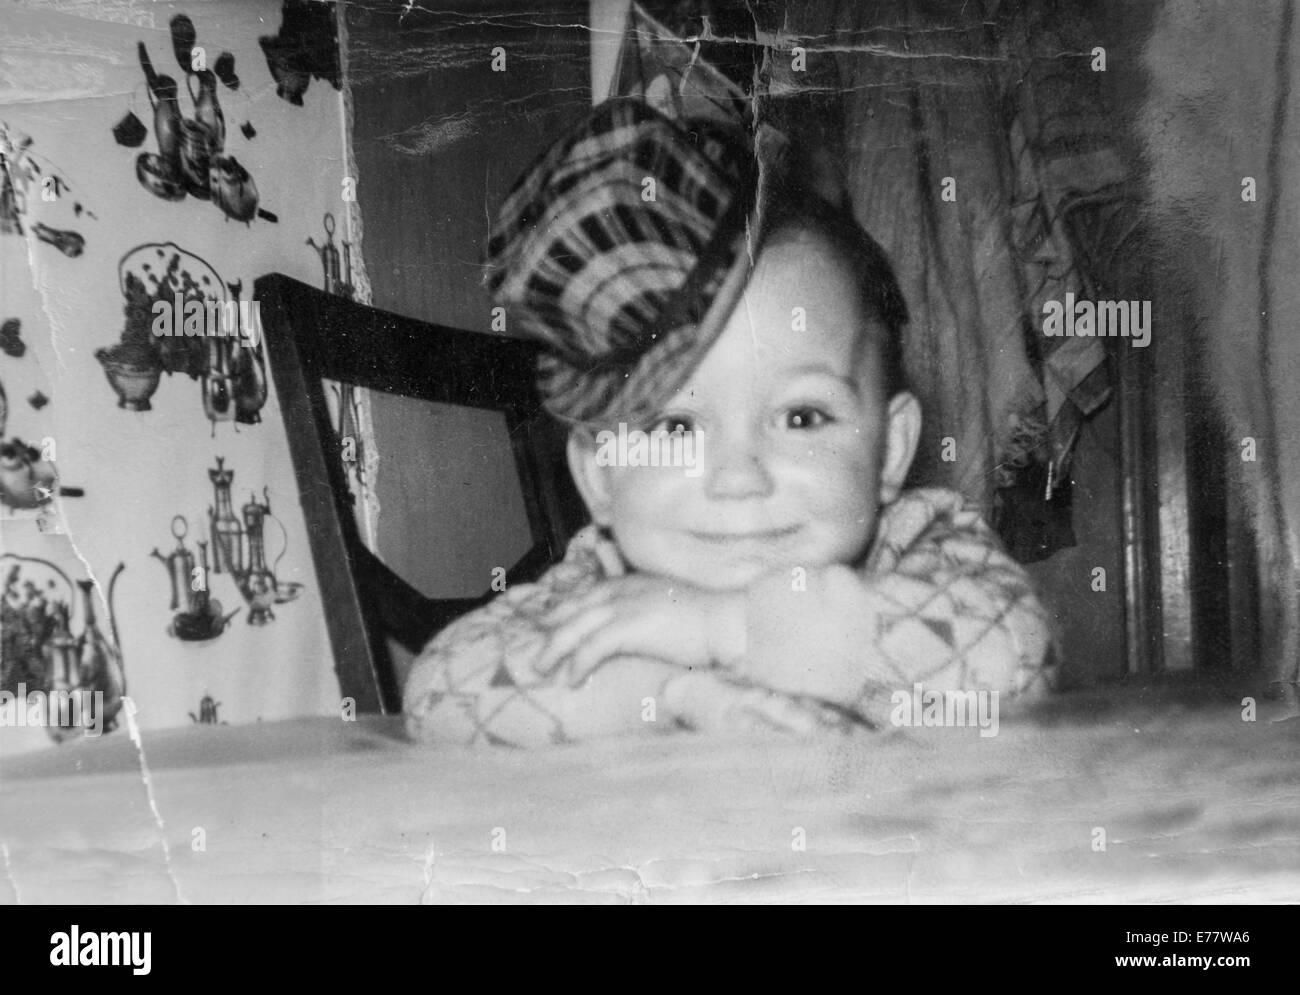 La photographie des années 60 montre un garçon avec un chapeau qui est assis à une table smiling Banque D'Images